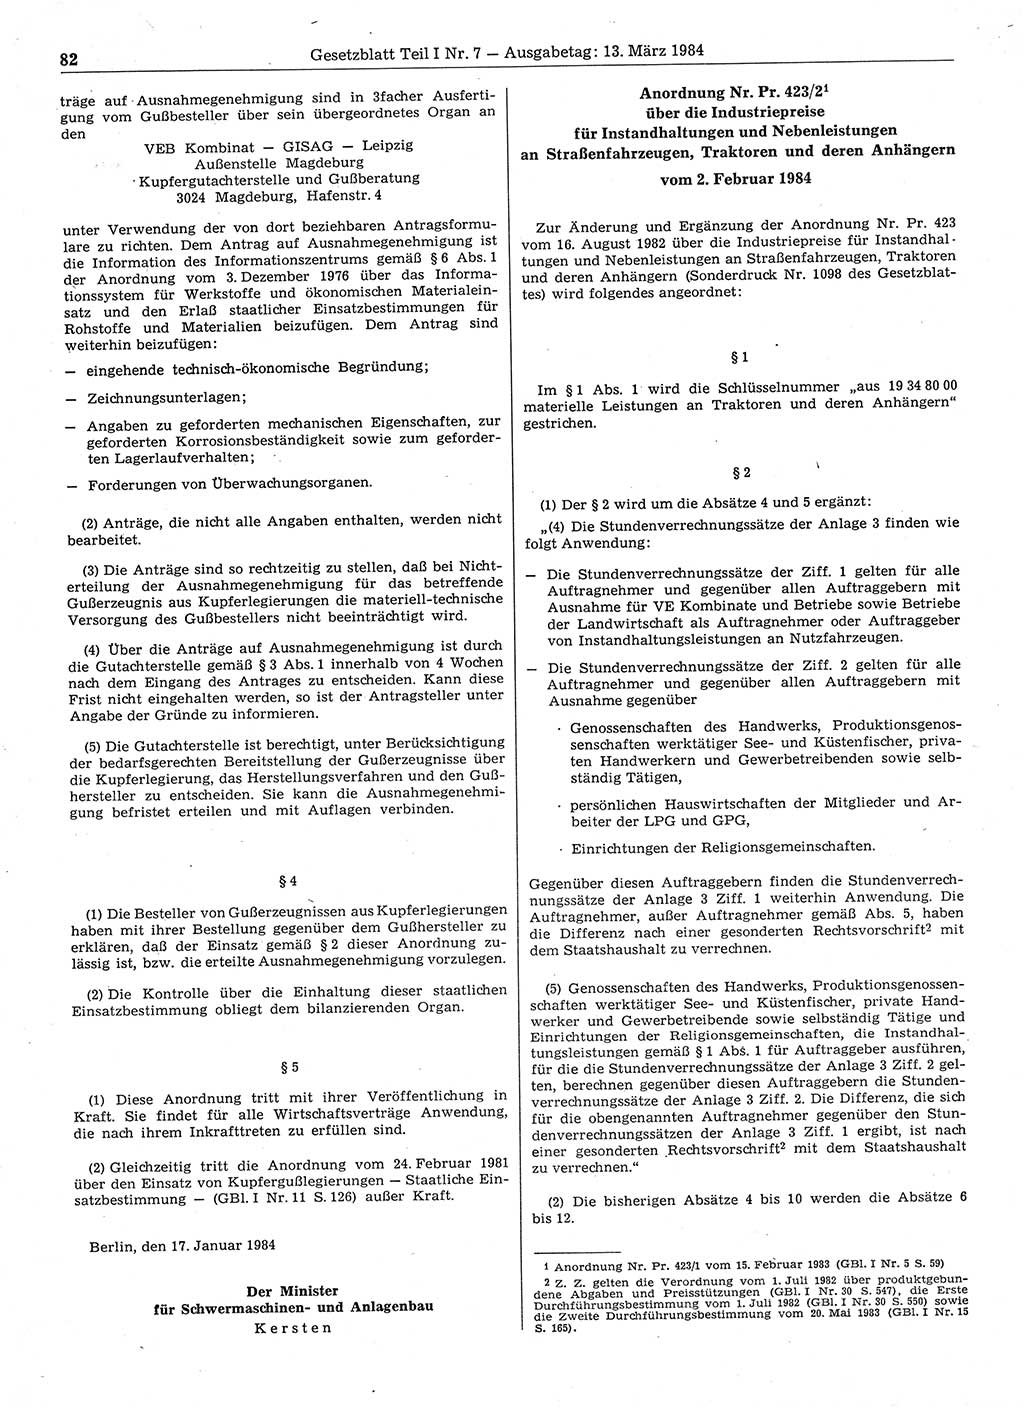 Gesetzblatt (GBl.) der Deutschen Demokratischen Republik (DDR) Teil Ⅰ 1984, Seite 82 (GBl. DDR Ⅰ 1984, S. 82)